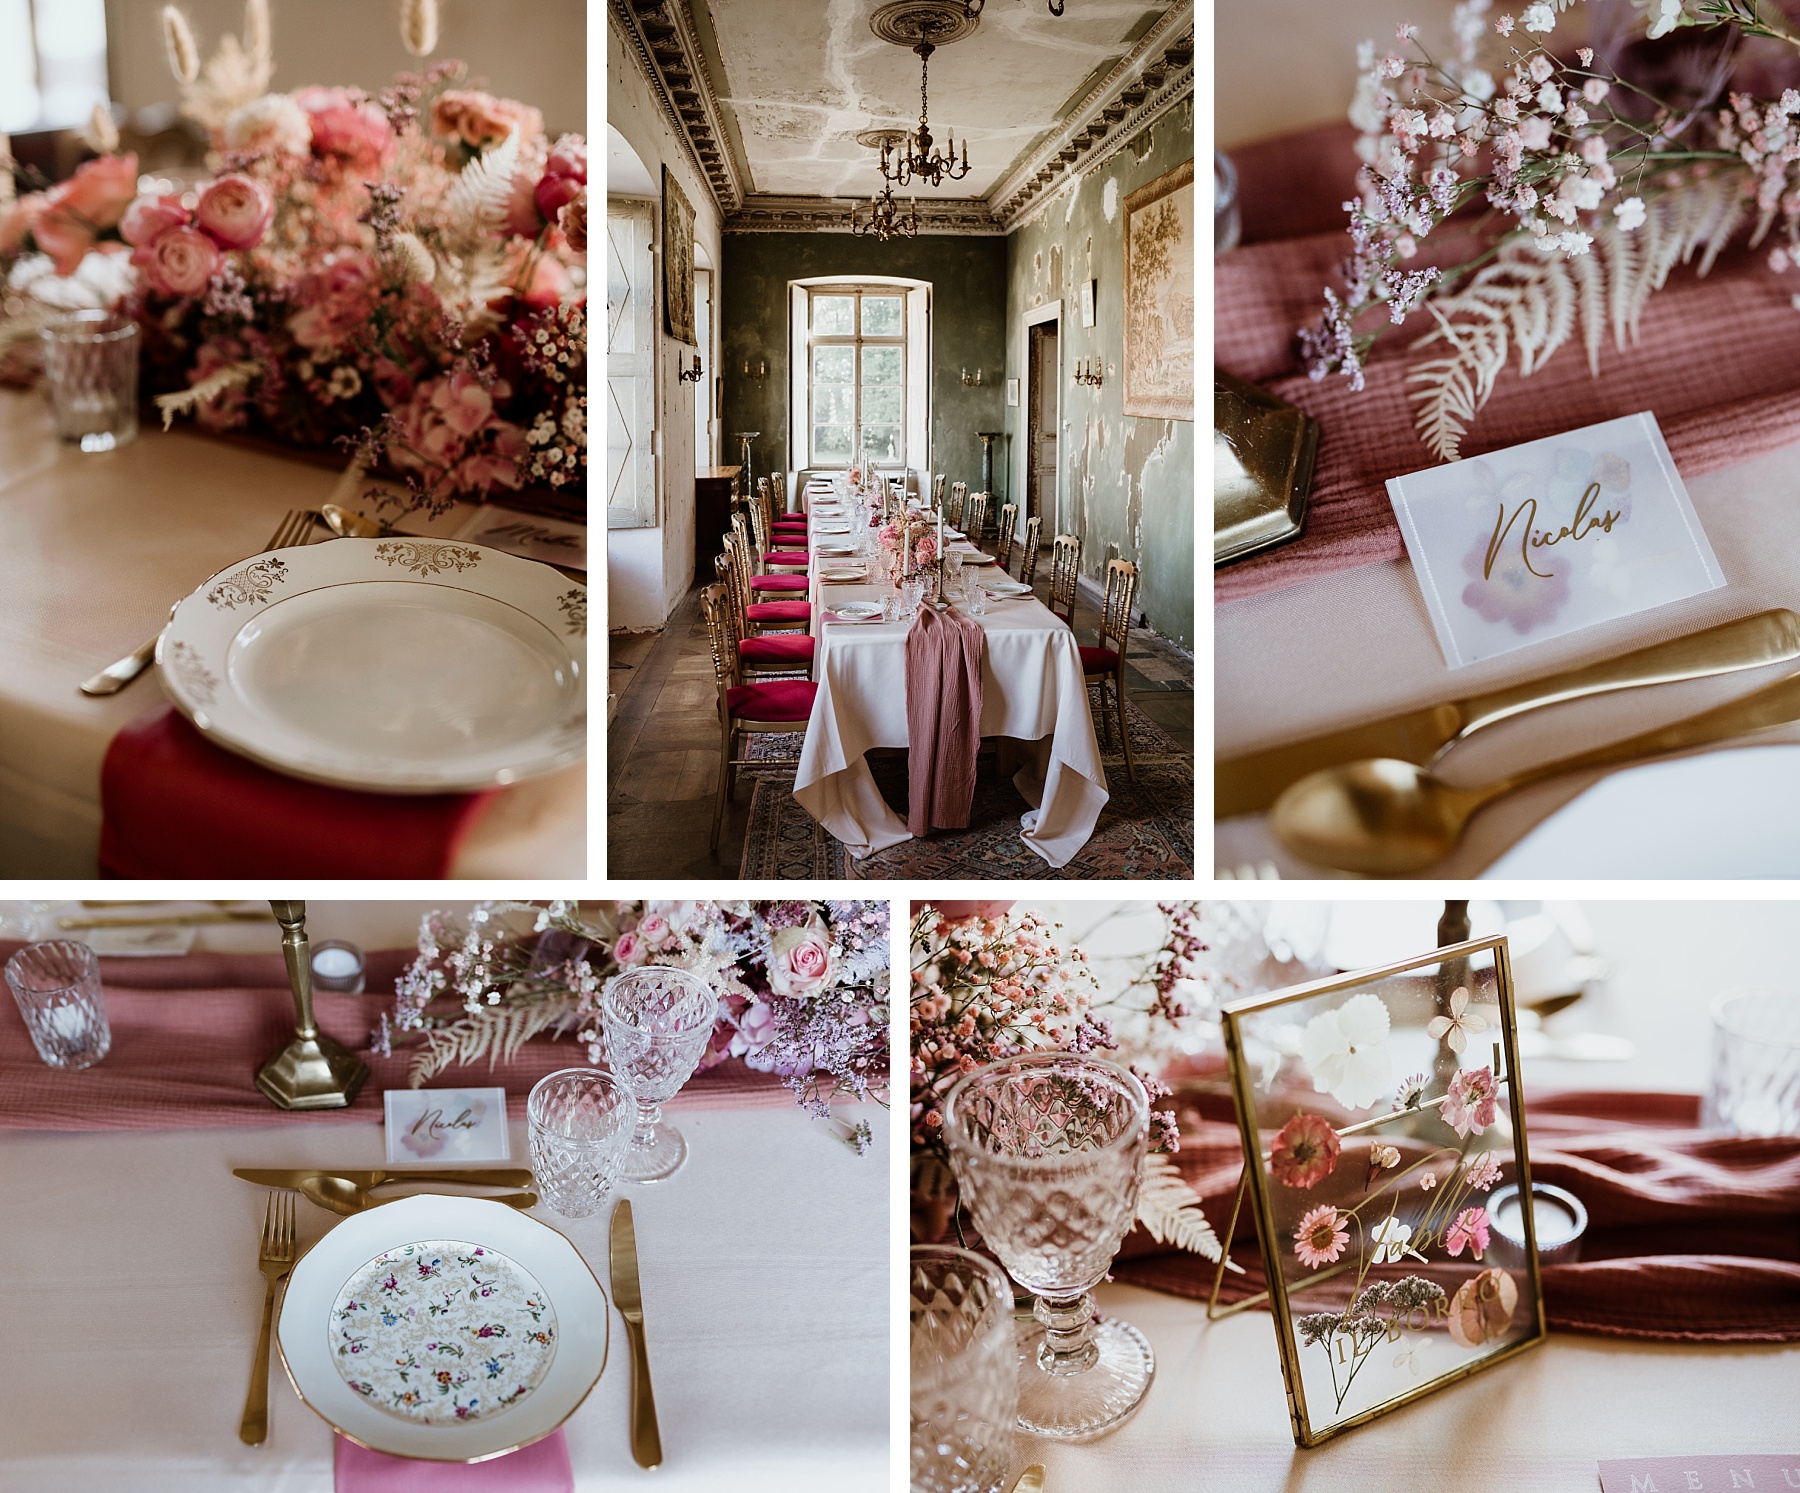 décoration de table mariage romantique rose froeschwiller